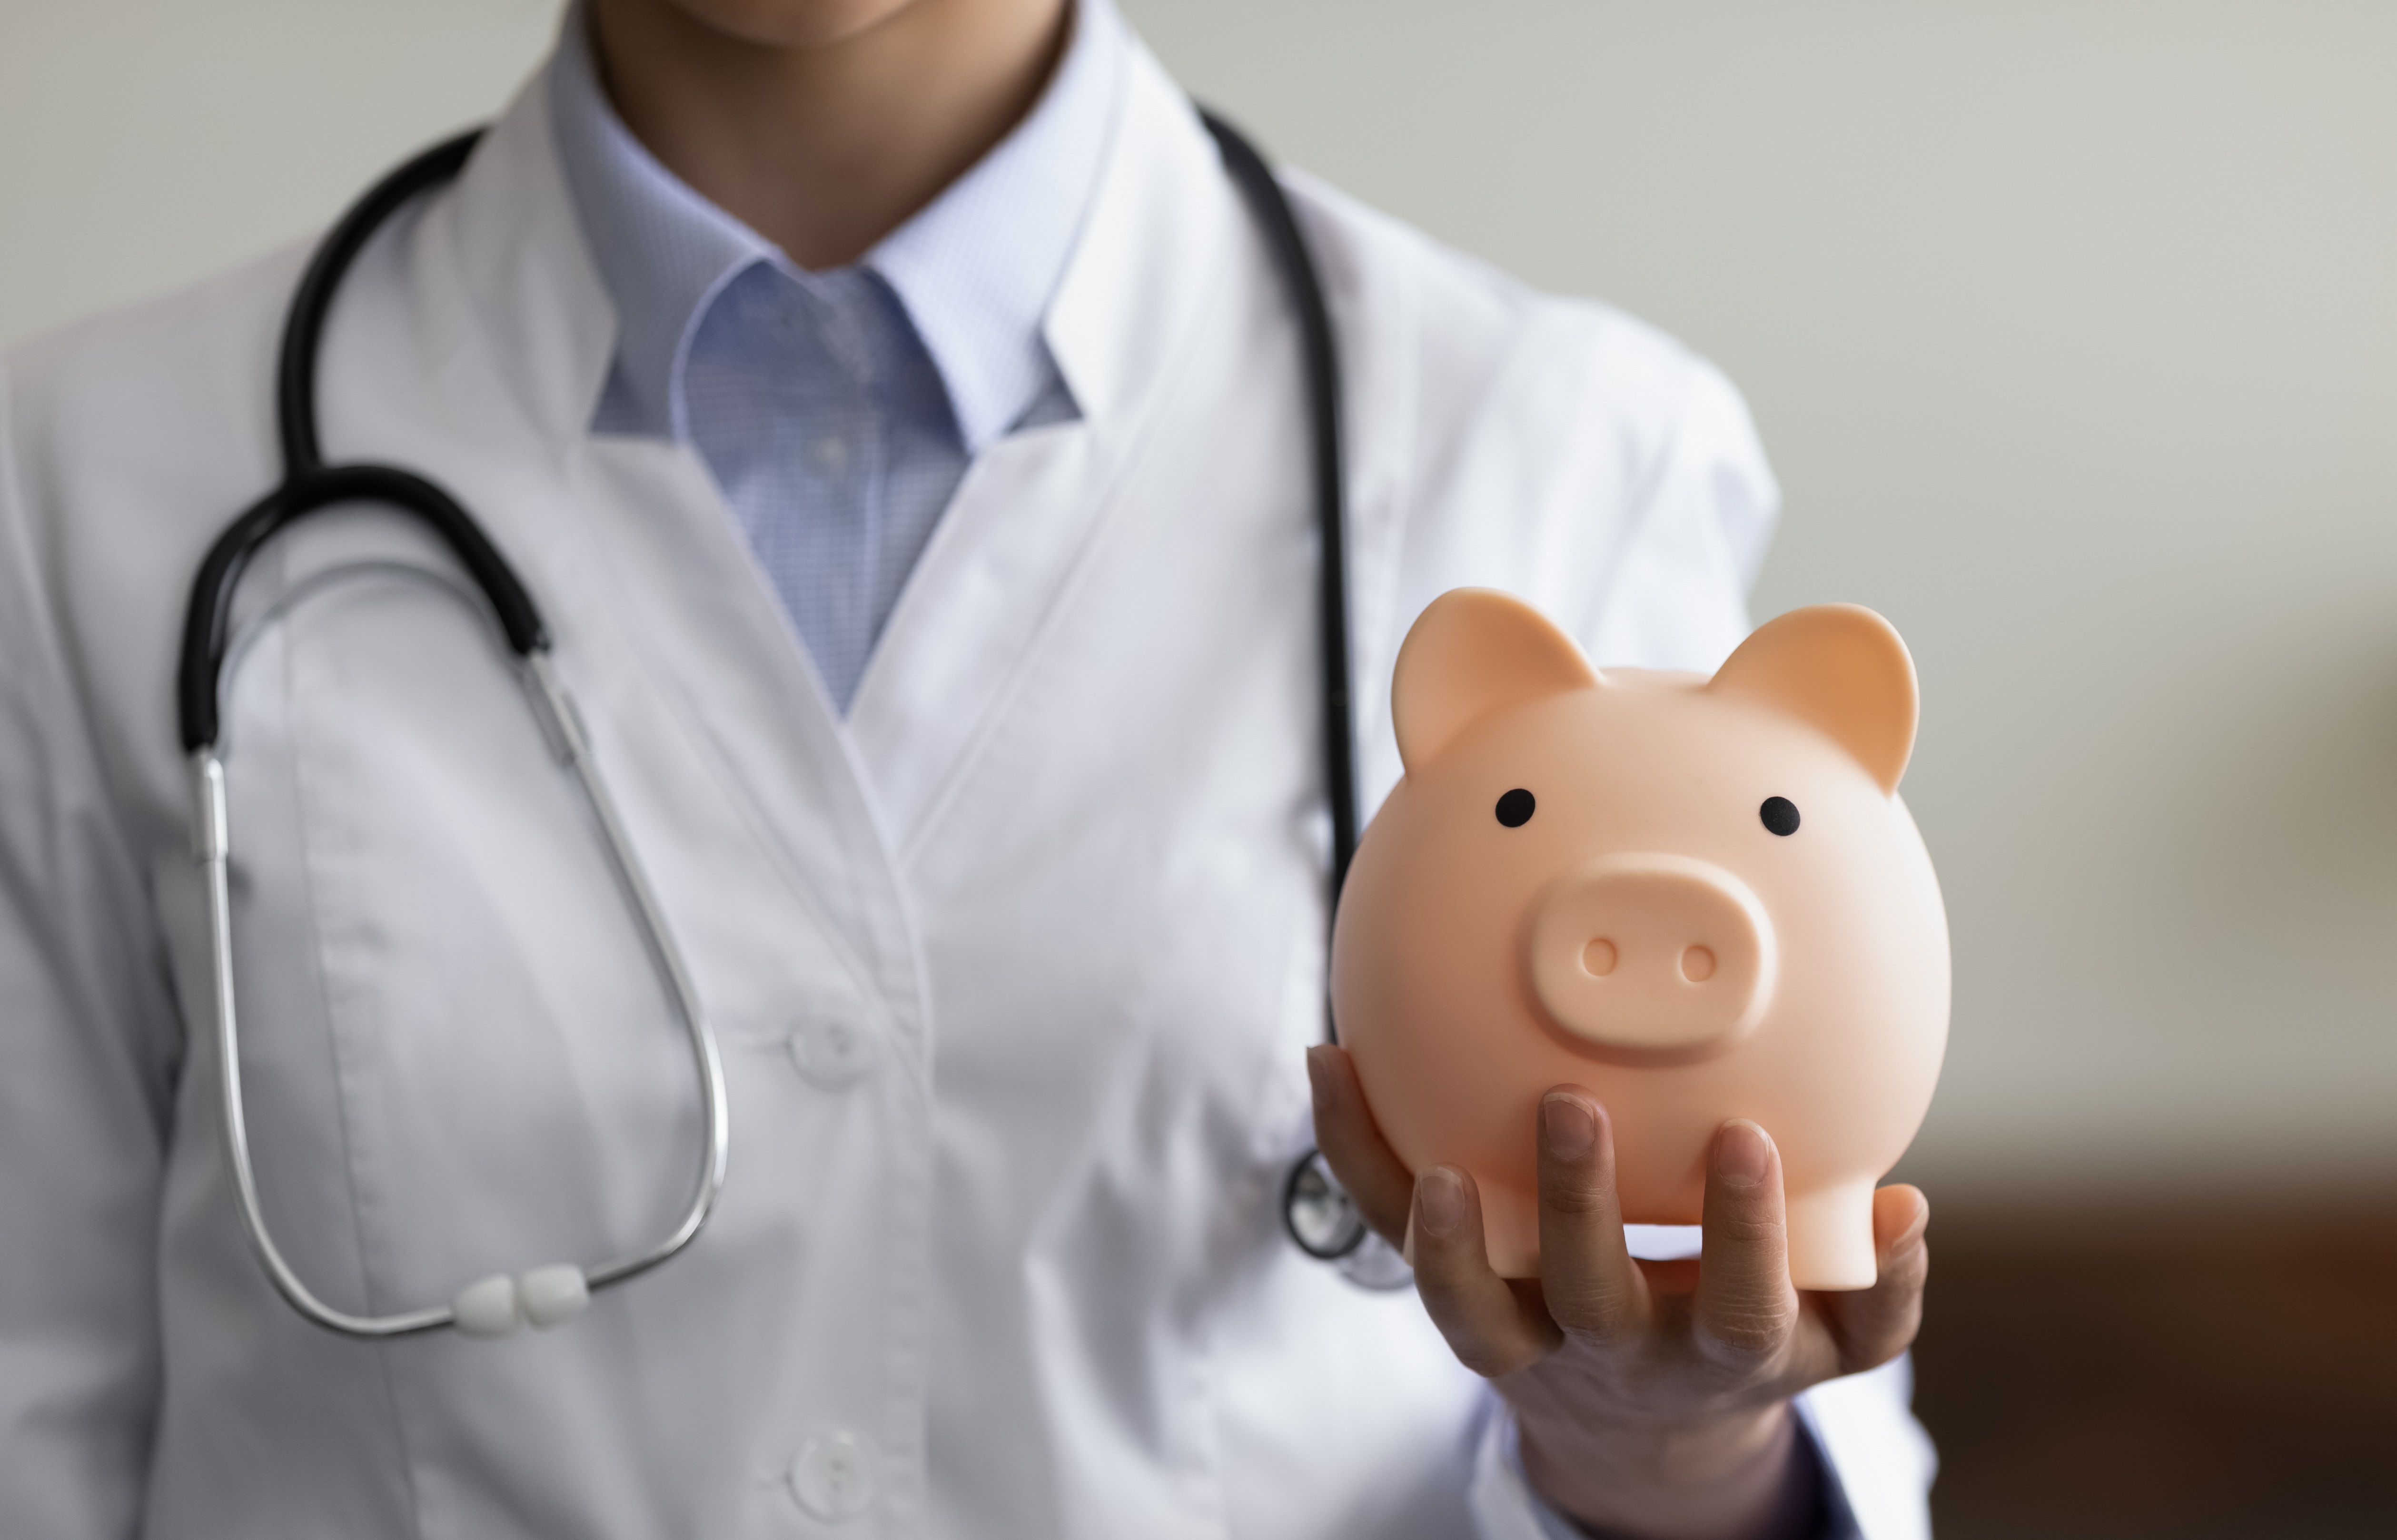 Gehalt - was verdient eine Ärztin / ein Arzt in Deutschland?